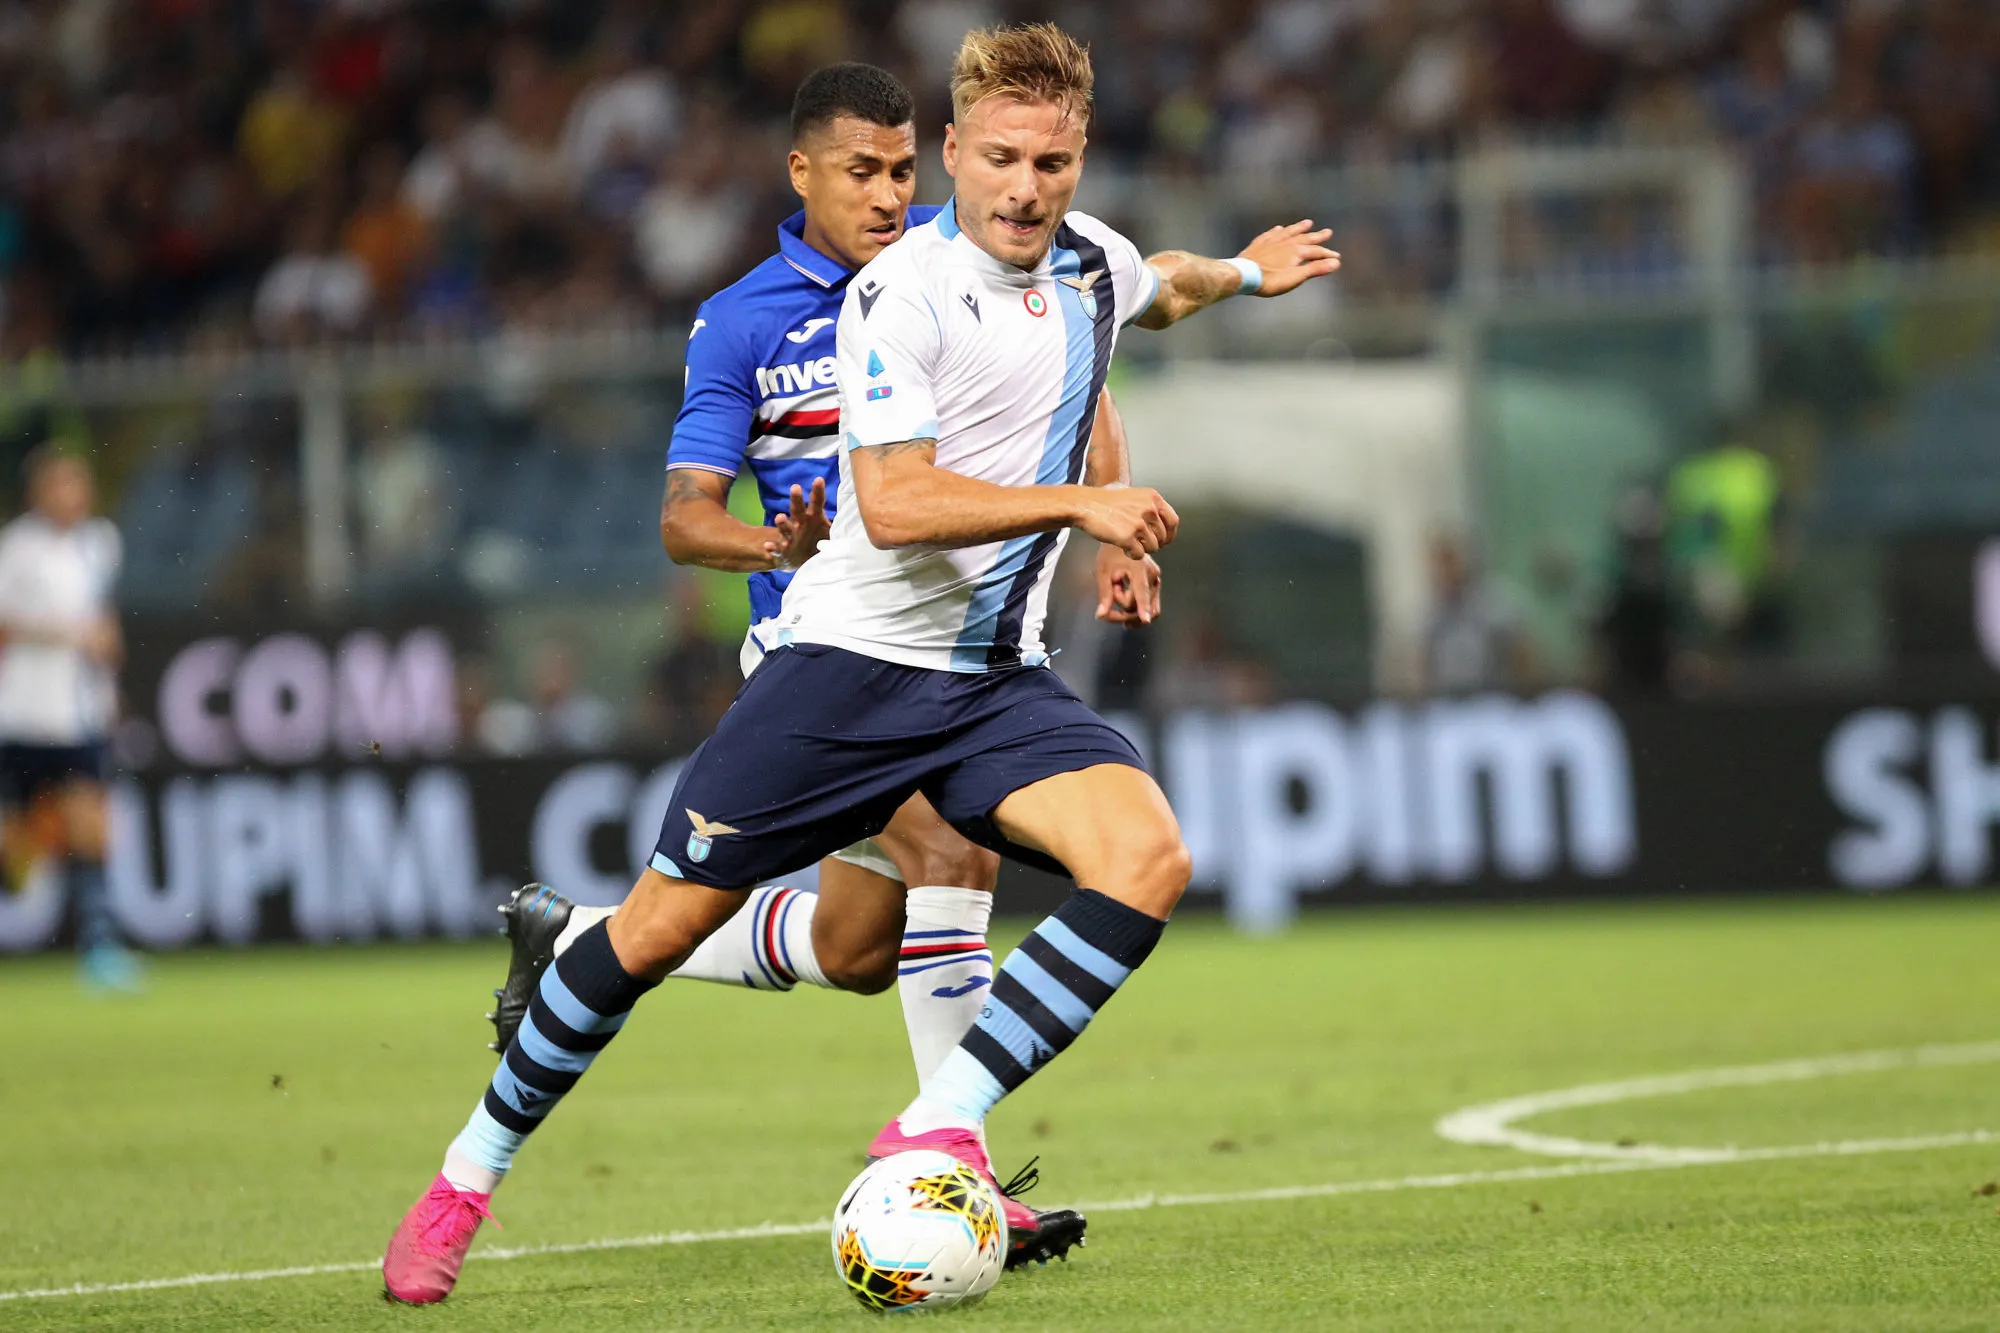 Pronostic Udinese Lazio : Analyse, prono et cotes du match de Serie A